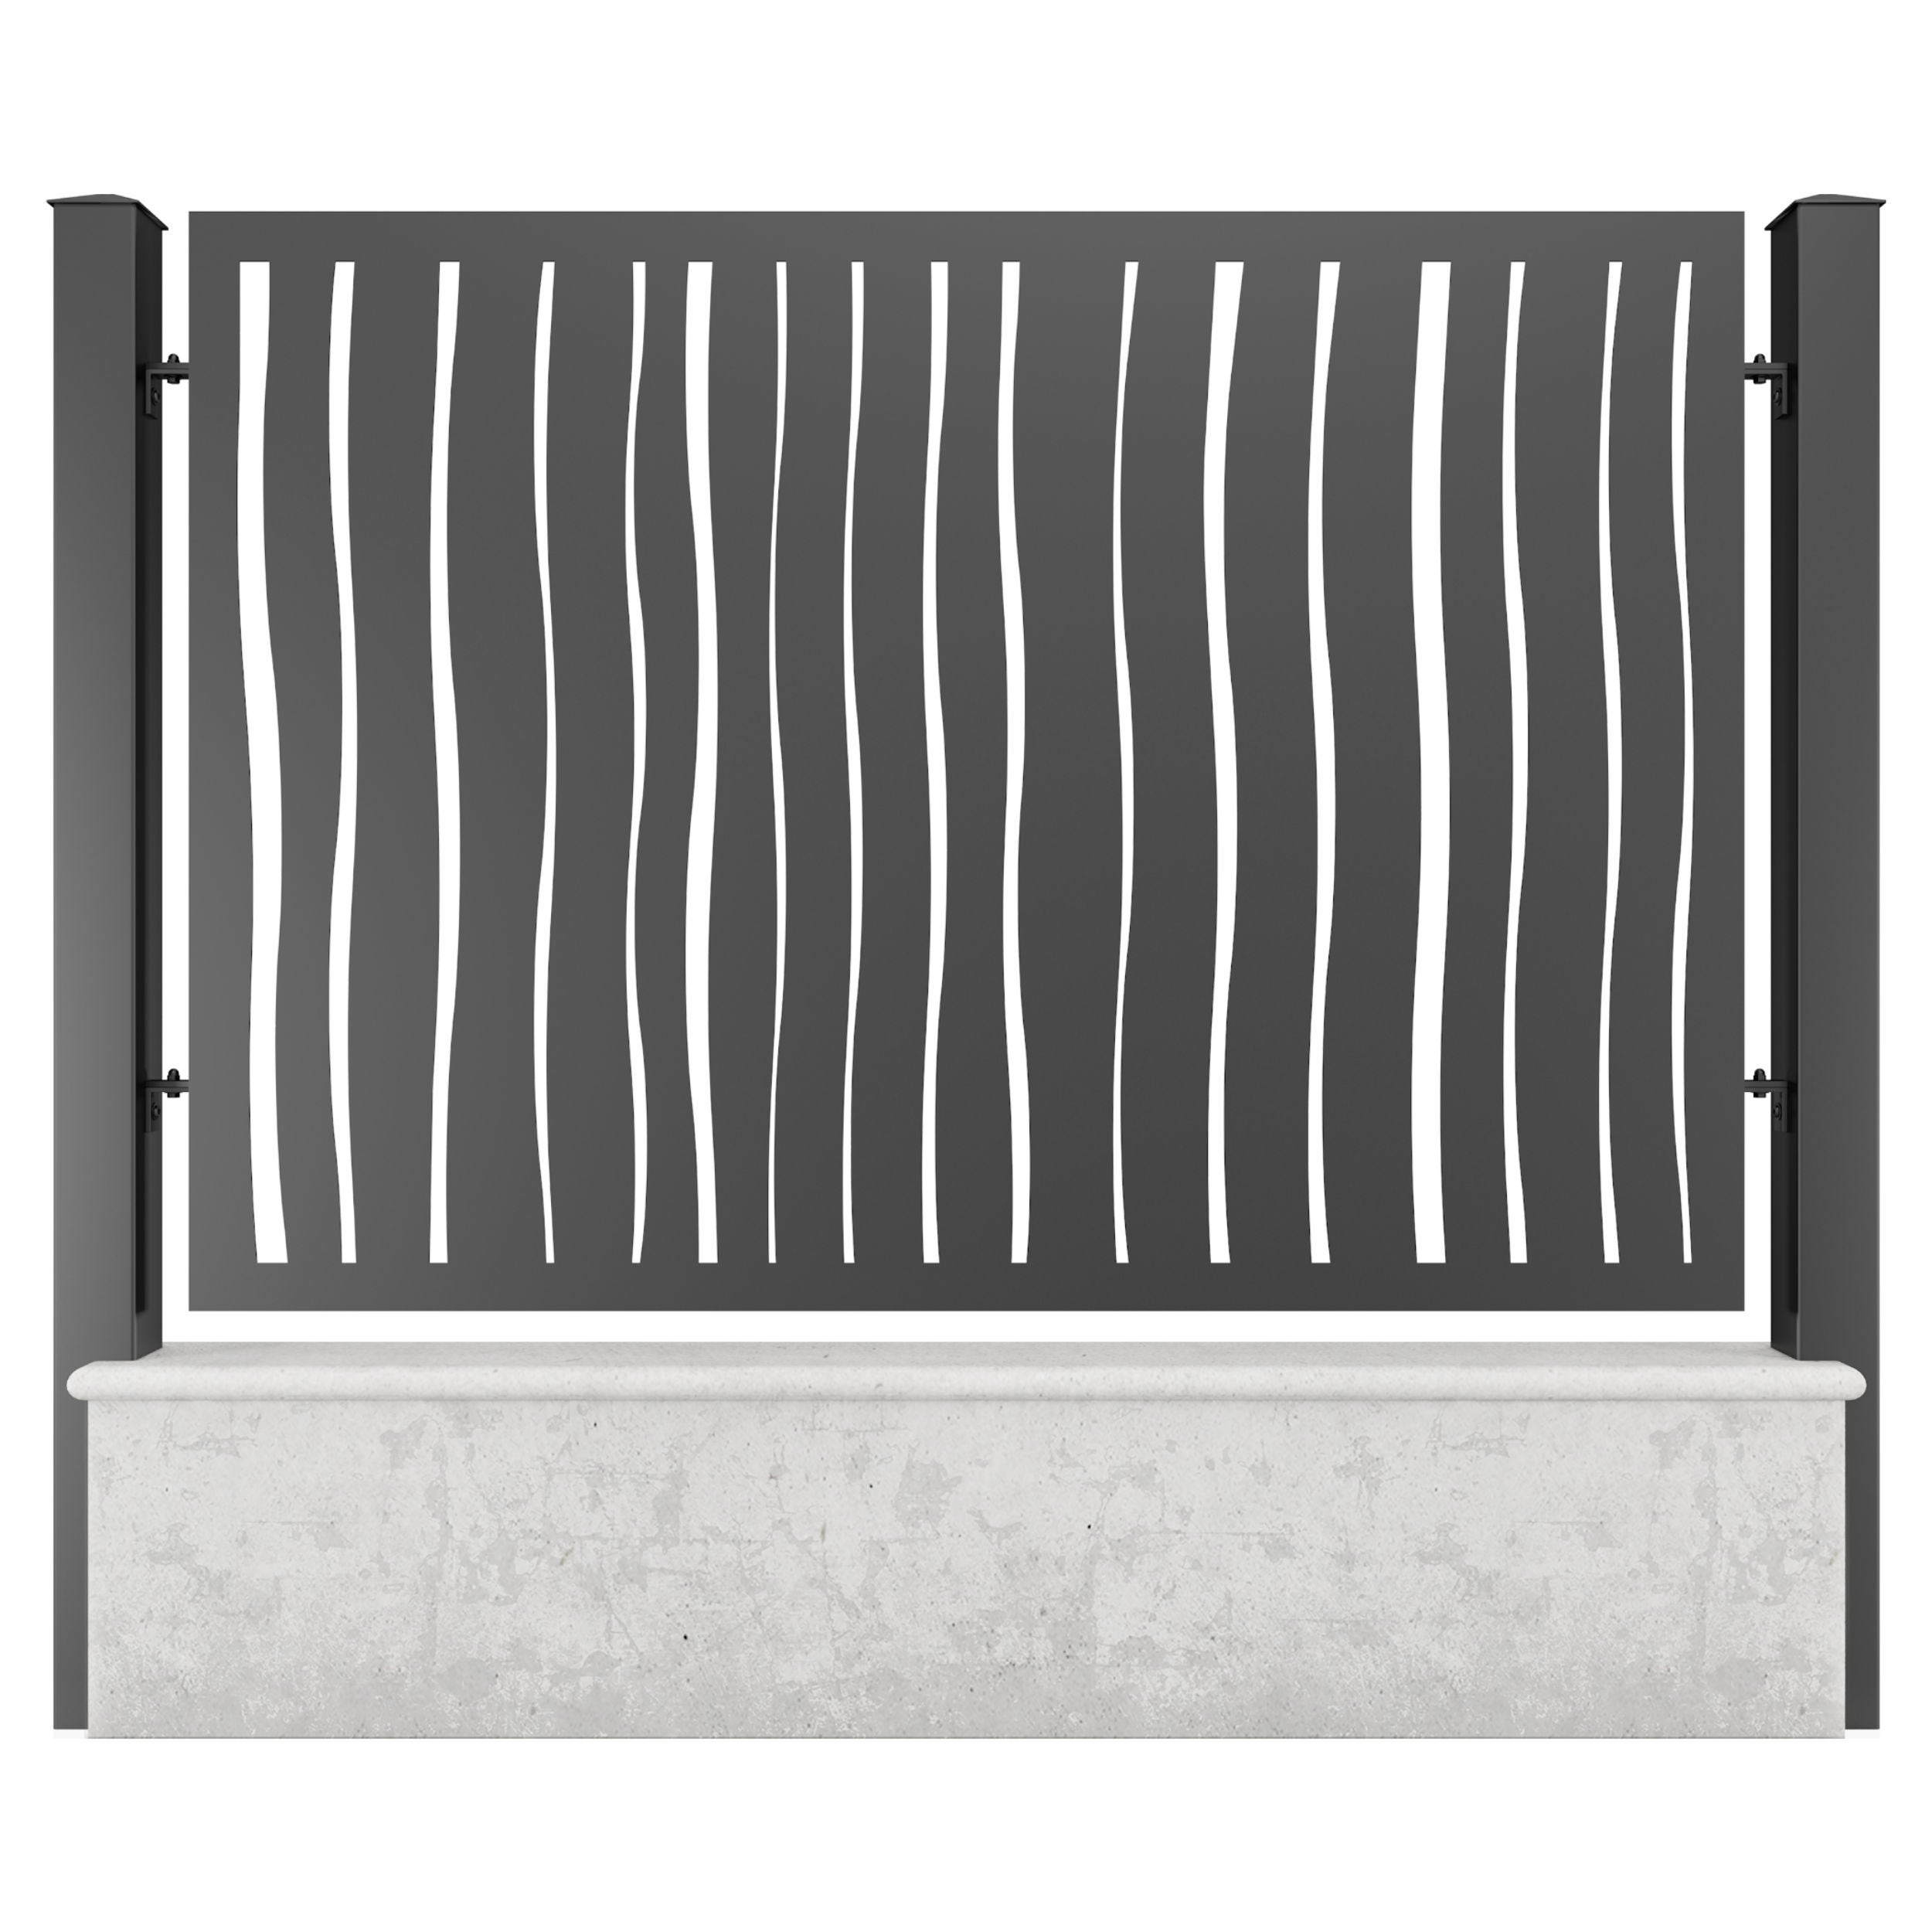 Panou metalic gard din tabla decupata G26B, otel, negru (RAL 9005), 1960 x 1500 mm